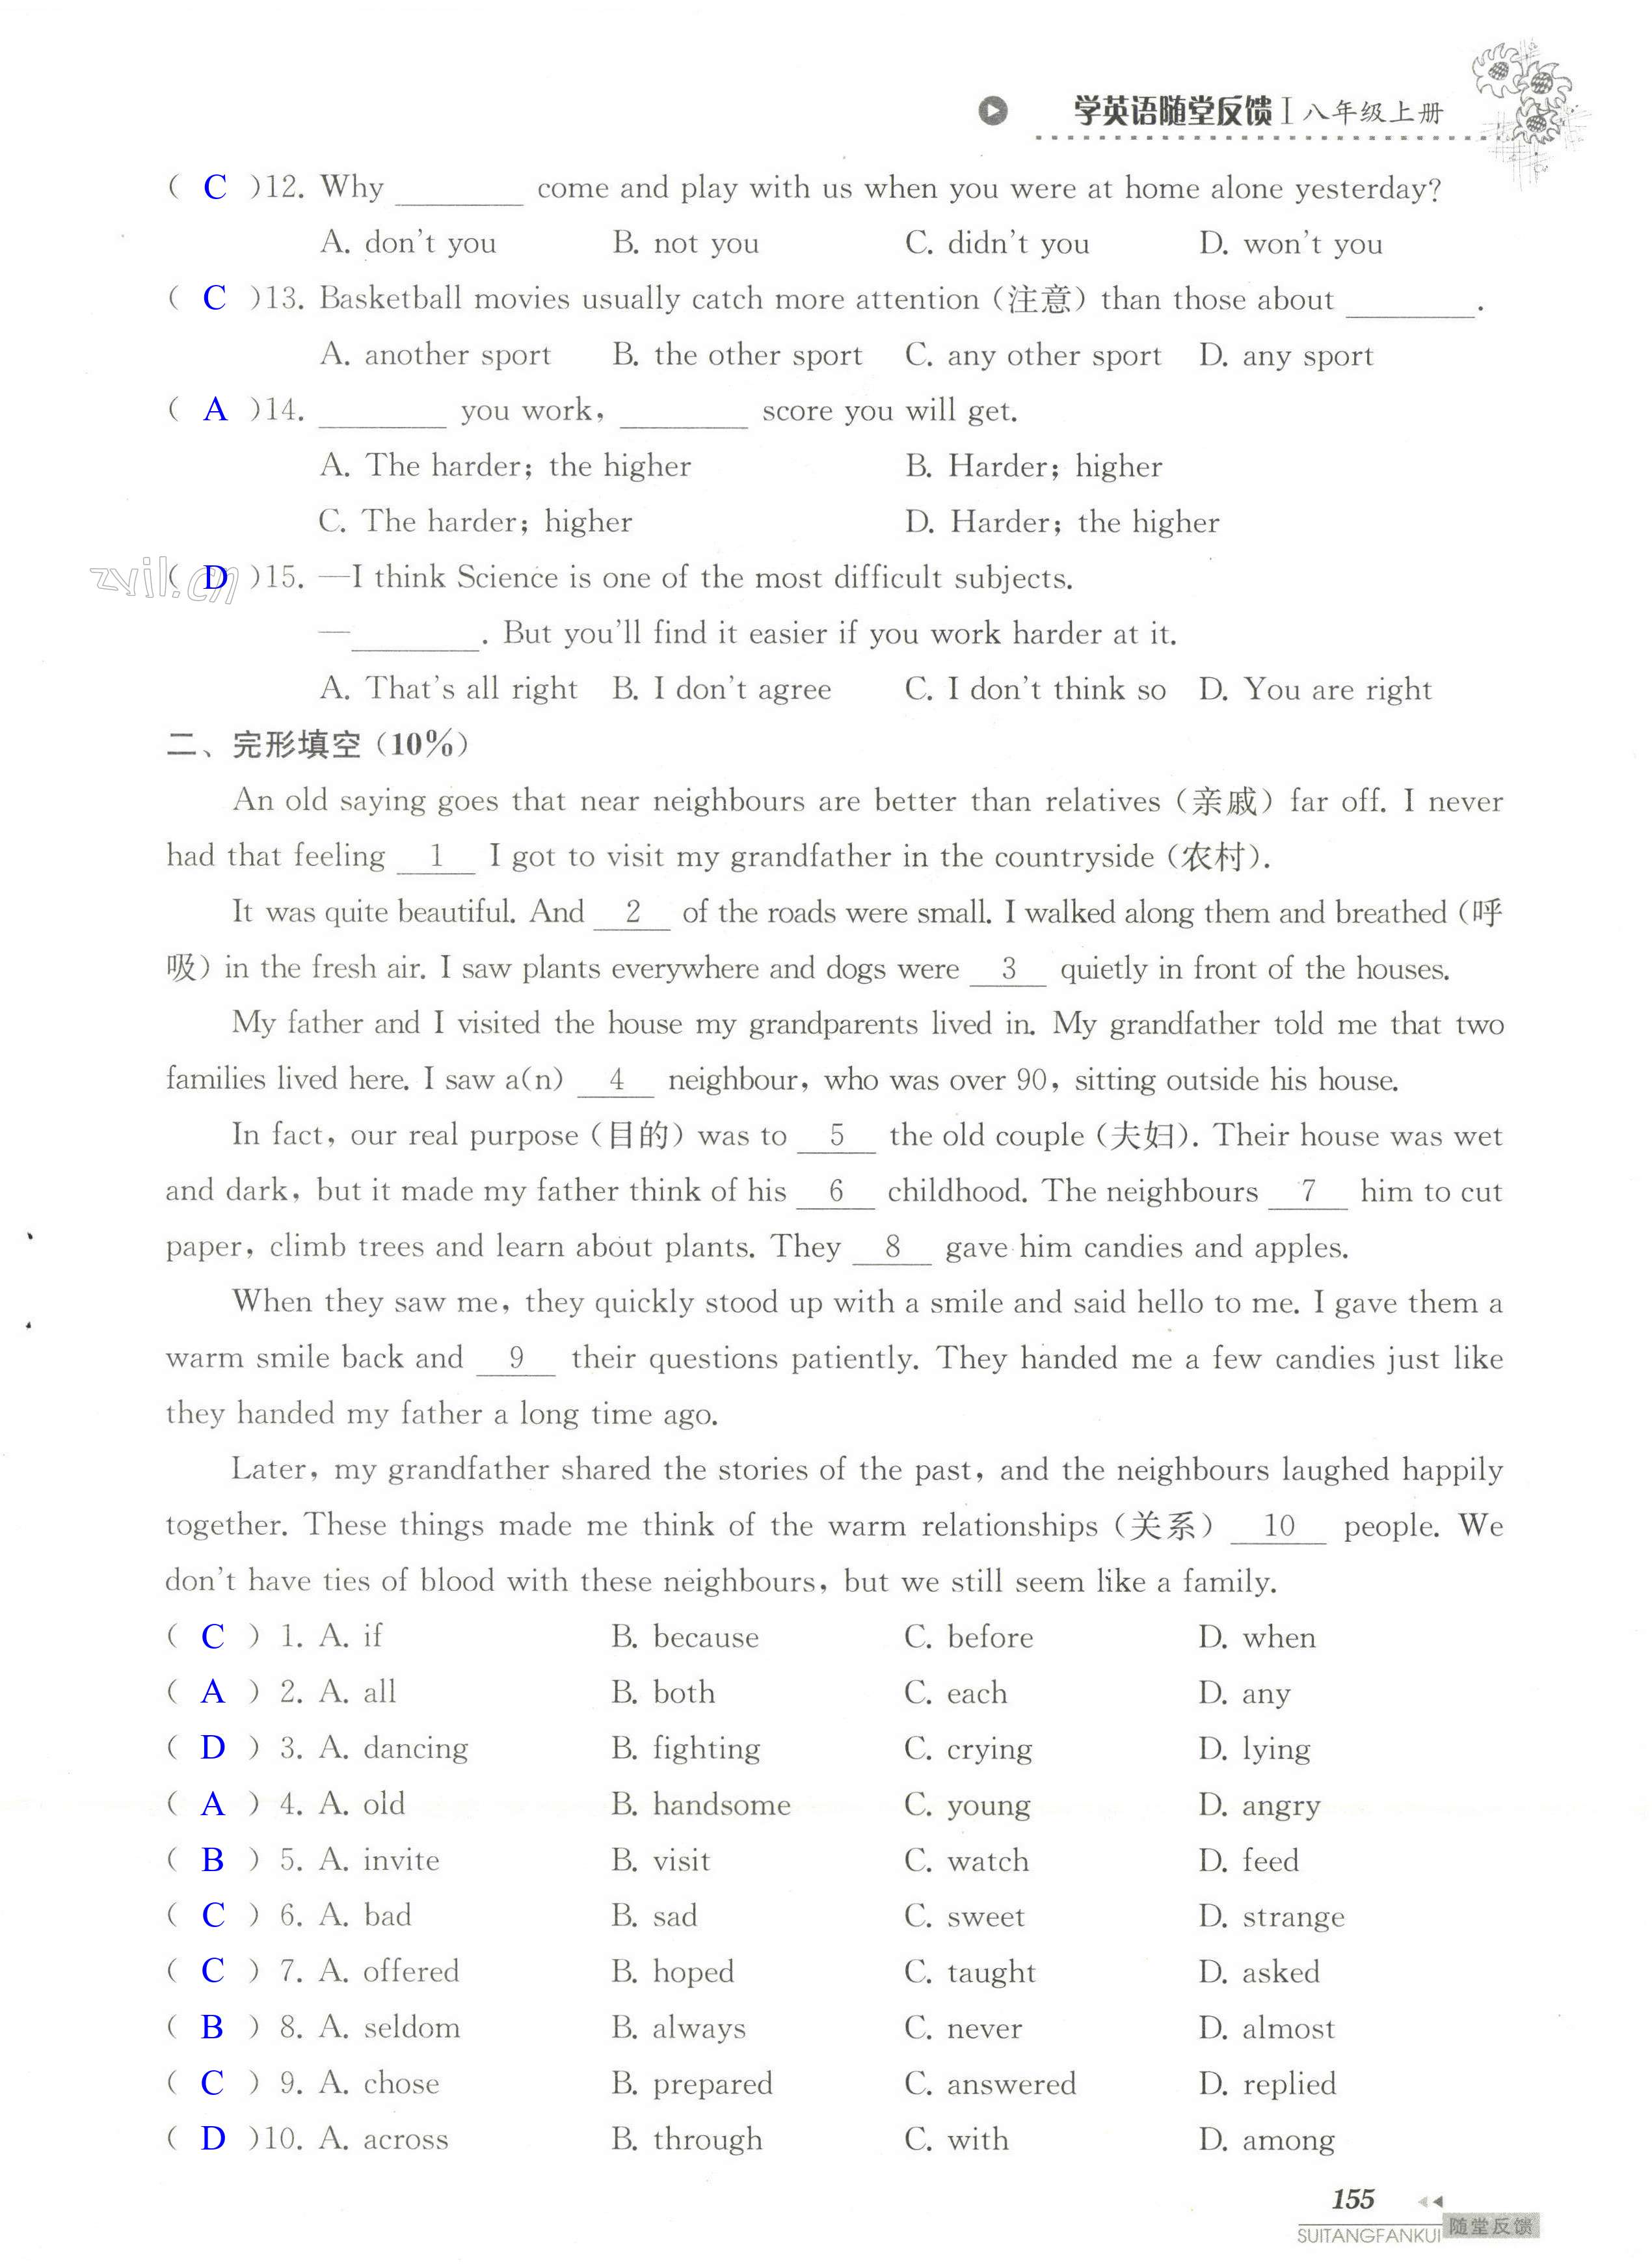 单元综合测试卷 Test for Unit 2 of 8A - 第155页